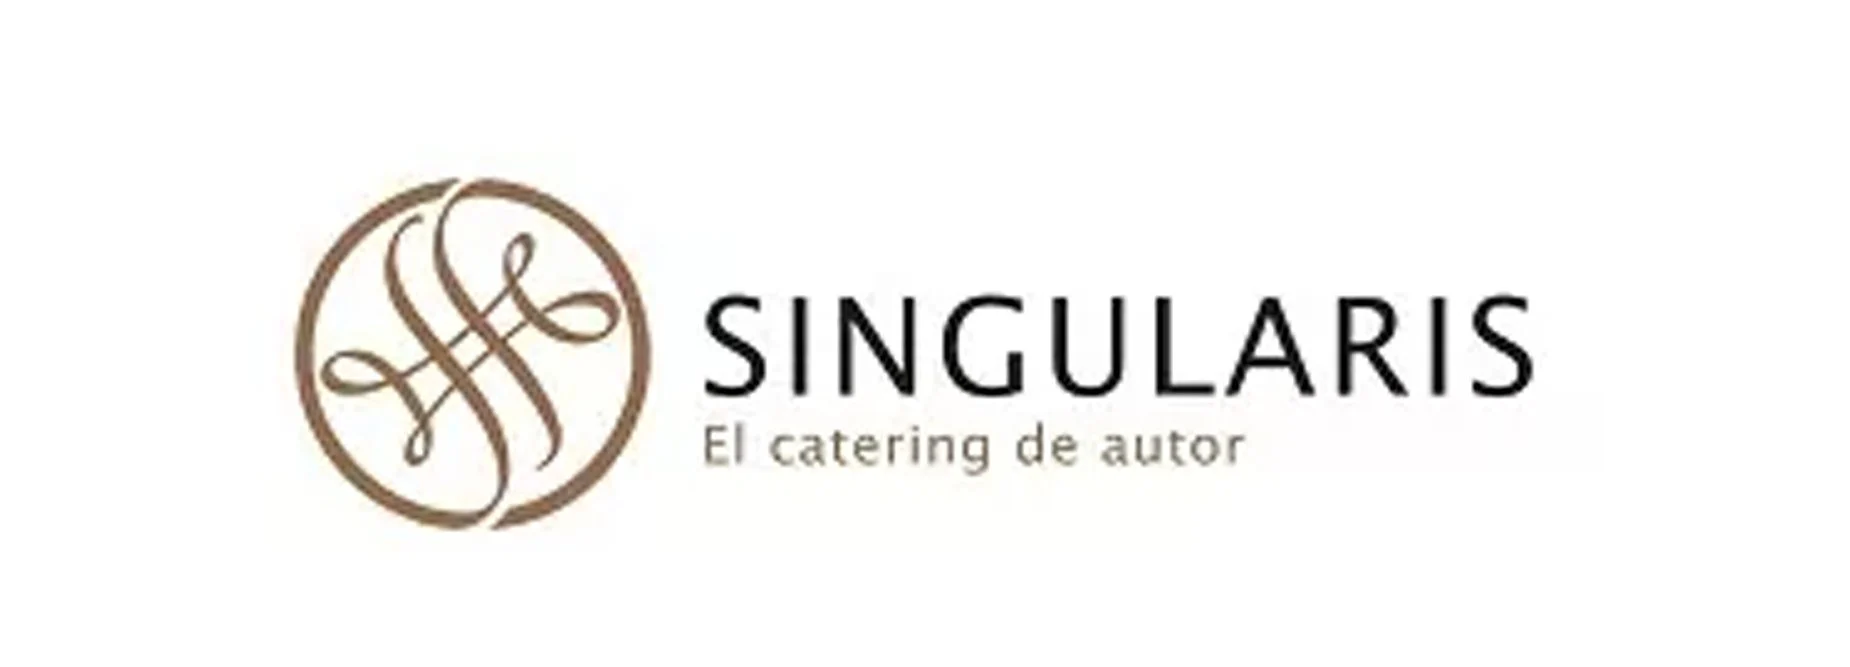 singularis